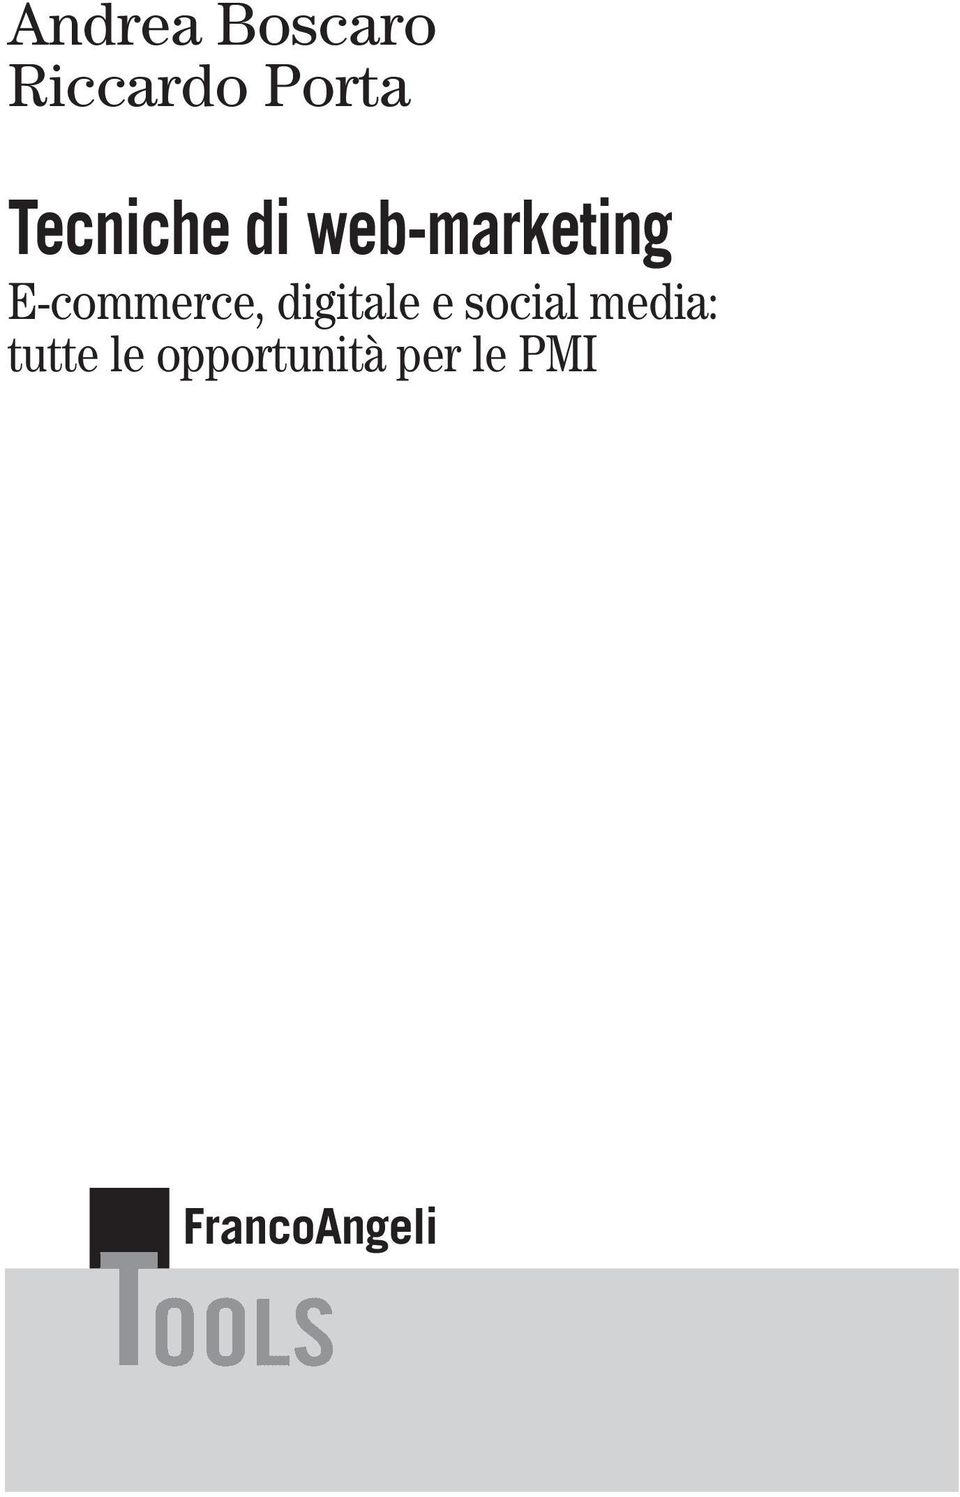 E-commerce, digitale e social